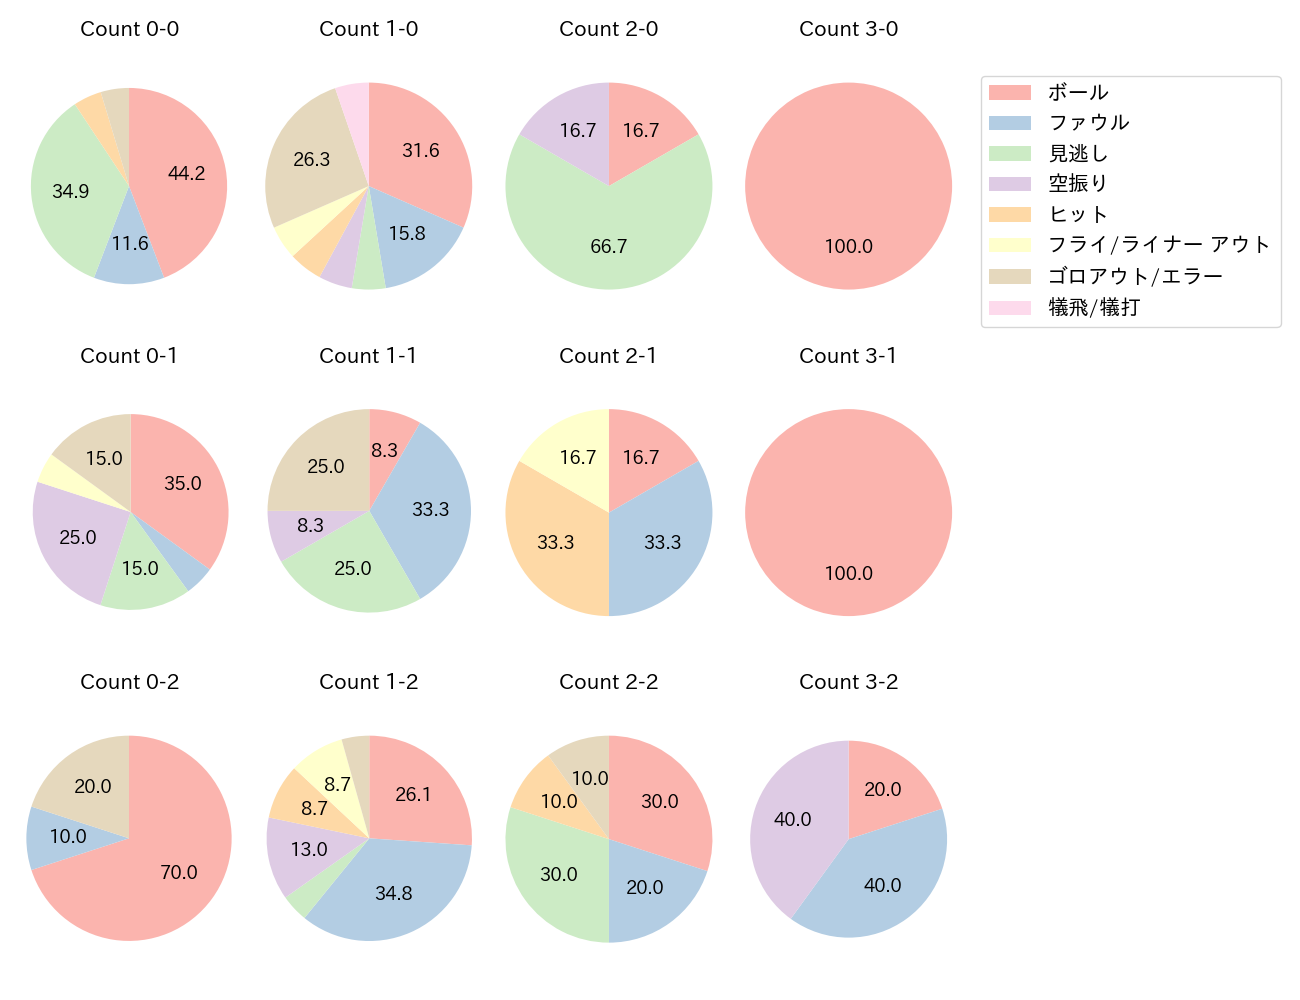 京田 陽太の球数分布(2023年7月)